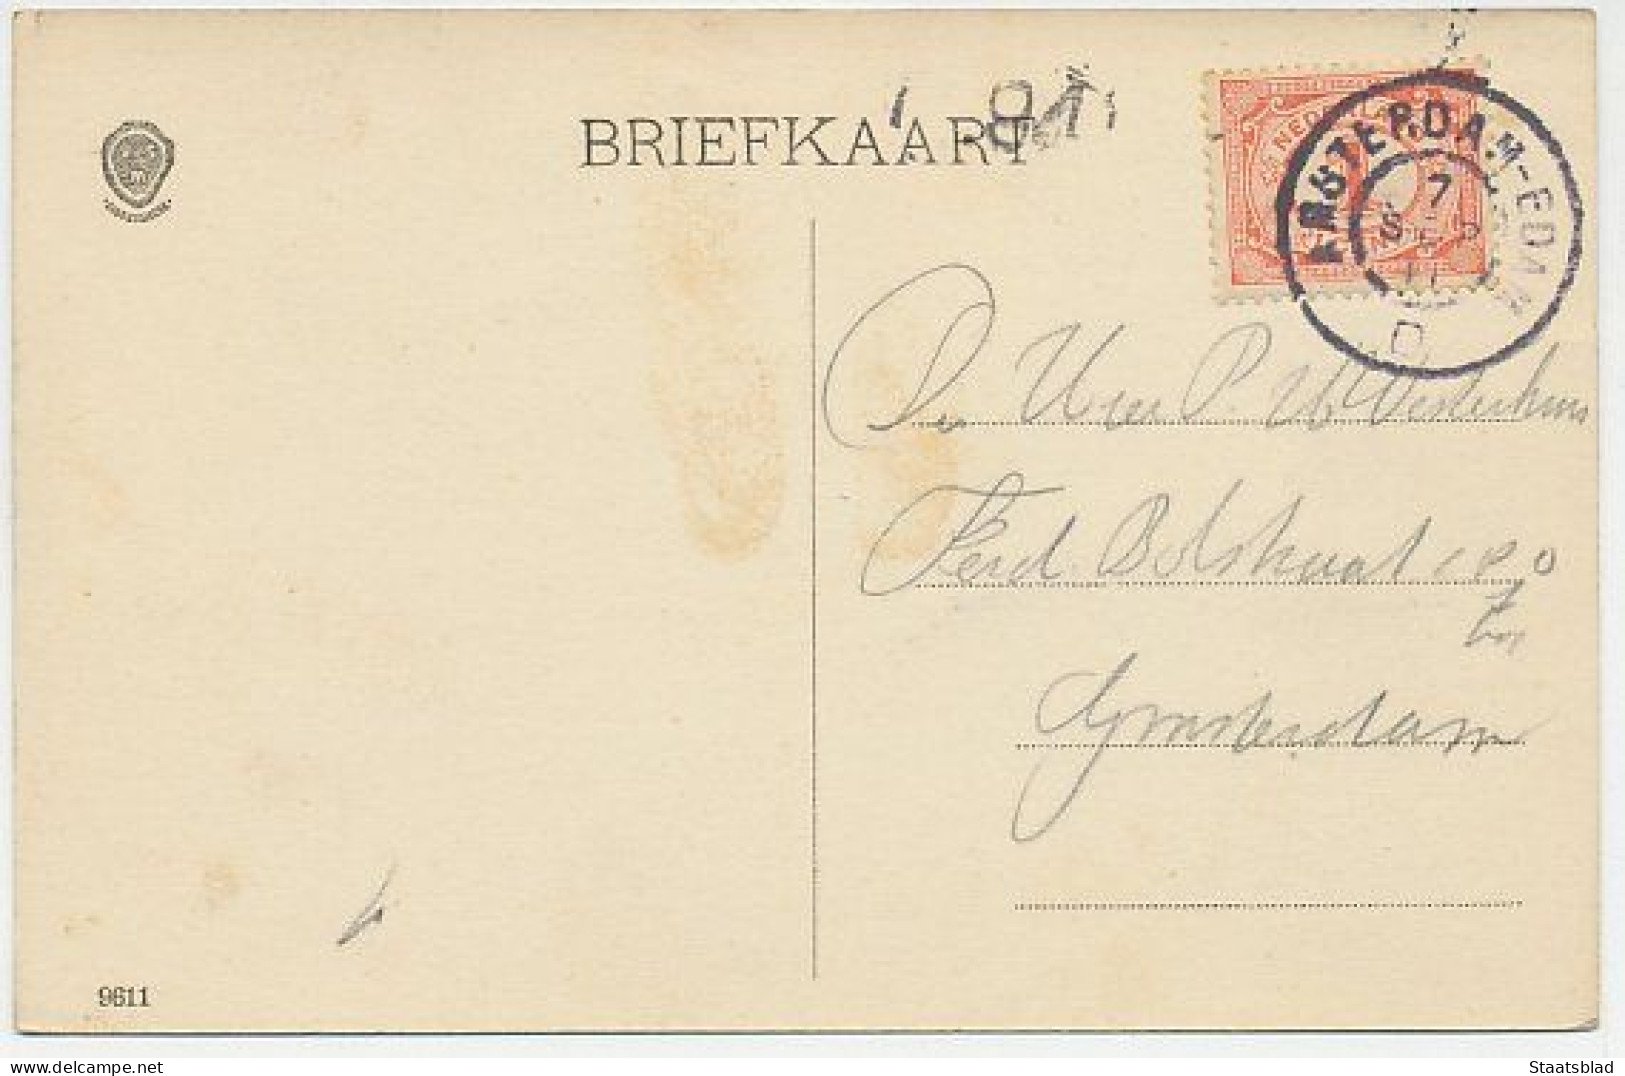 04- Prentbriefkaart Edam 1911 - Spuiburg - Edam